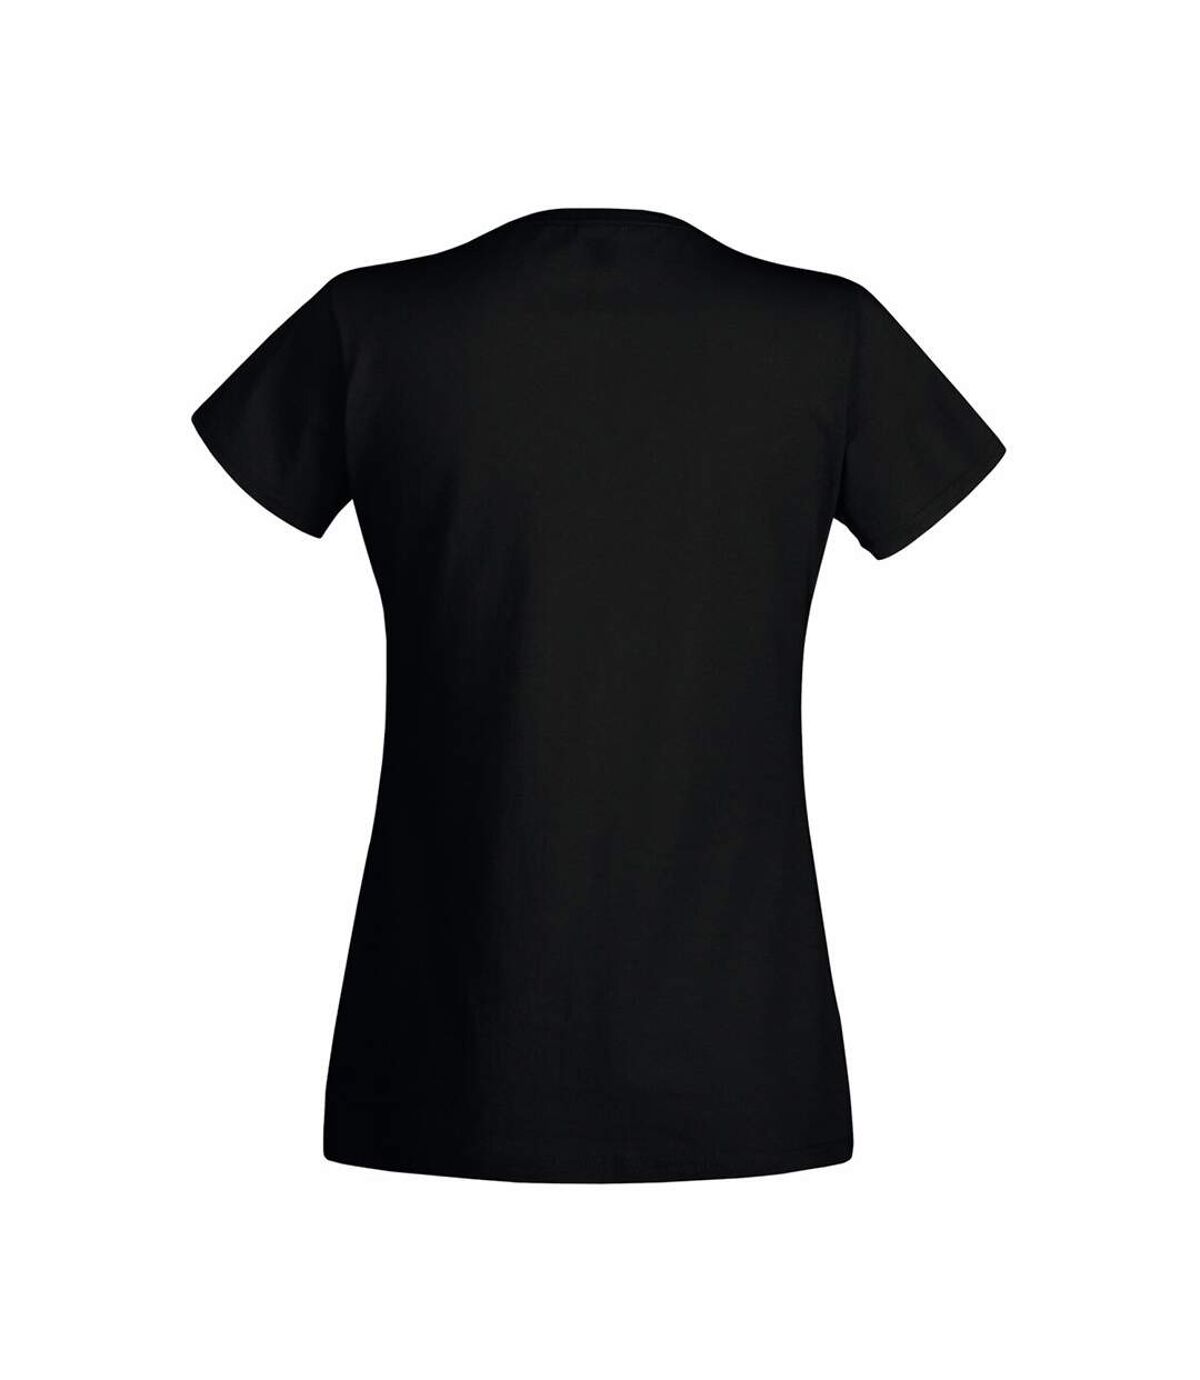 Fruit Of The Loom - T-shirt à manches courtes - Femme (Noir) - UTBC1361